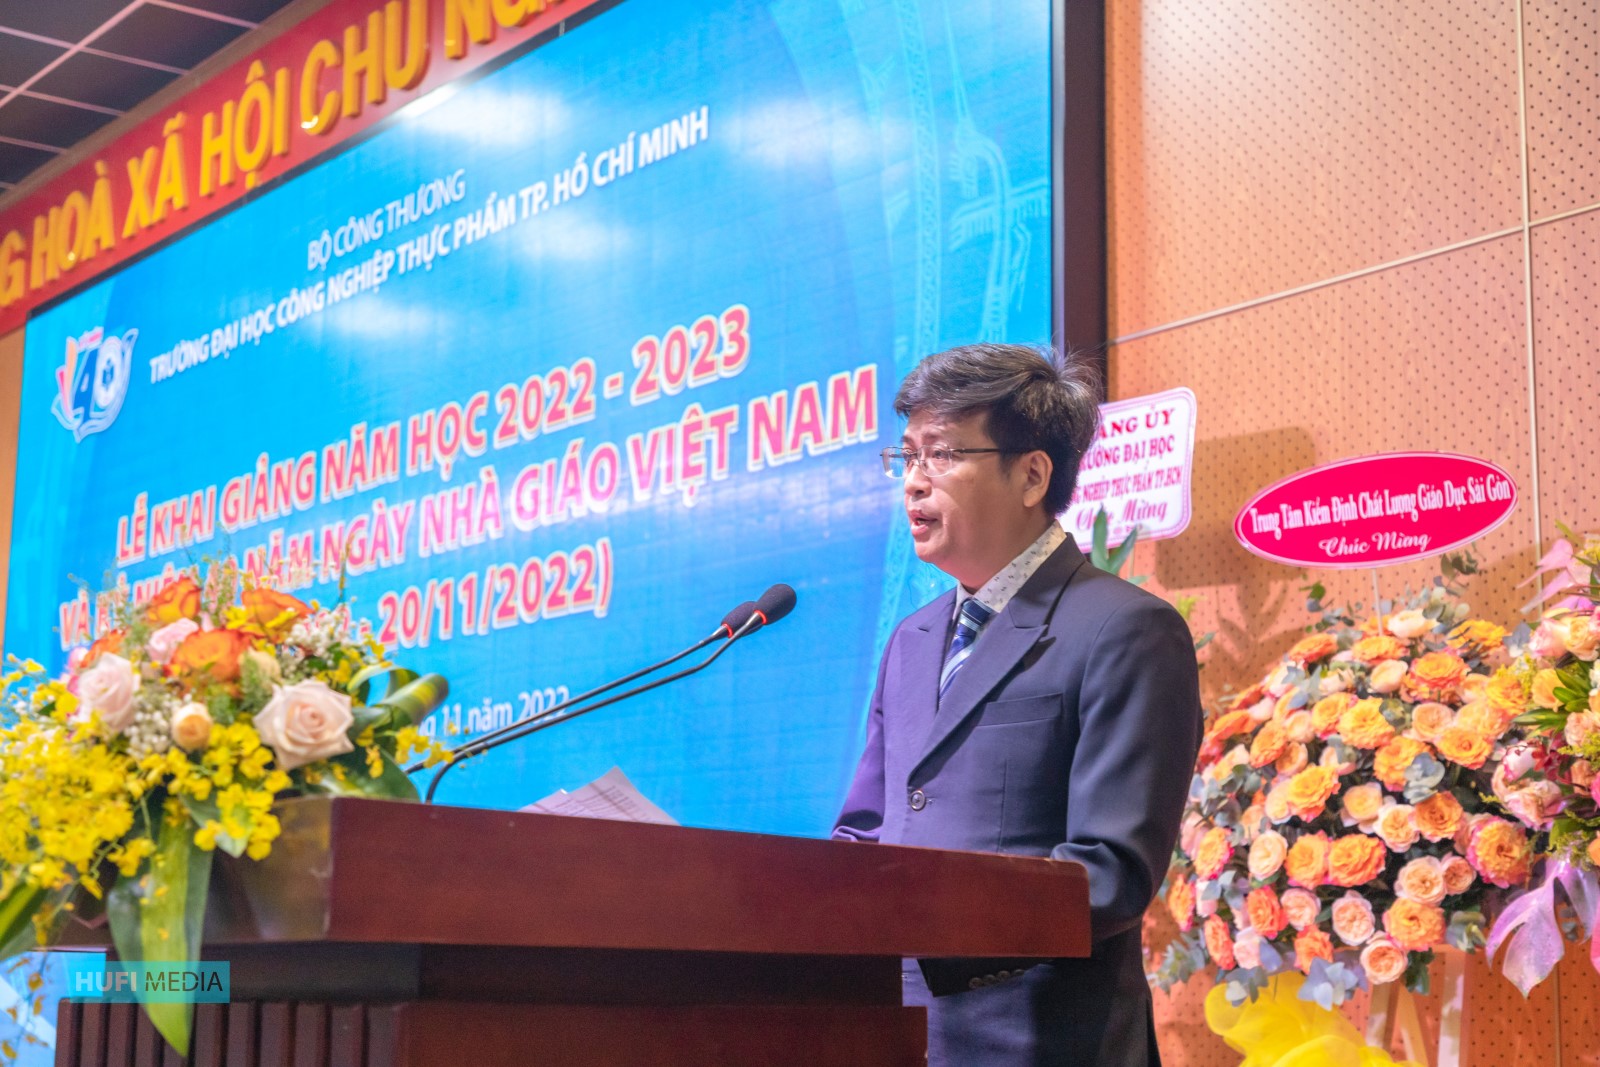 HUFI tổ chức Lễ Khai giảng năm học 2022 – 2023 và chào mừng Ngày Nhà giáo Việt Nam 20/11